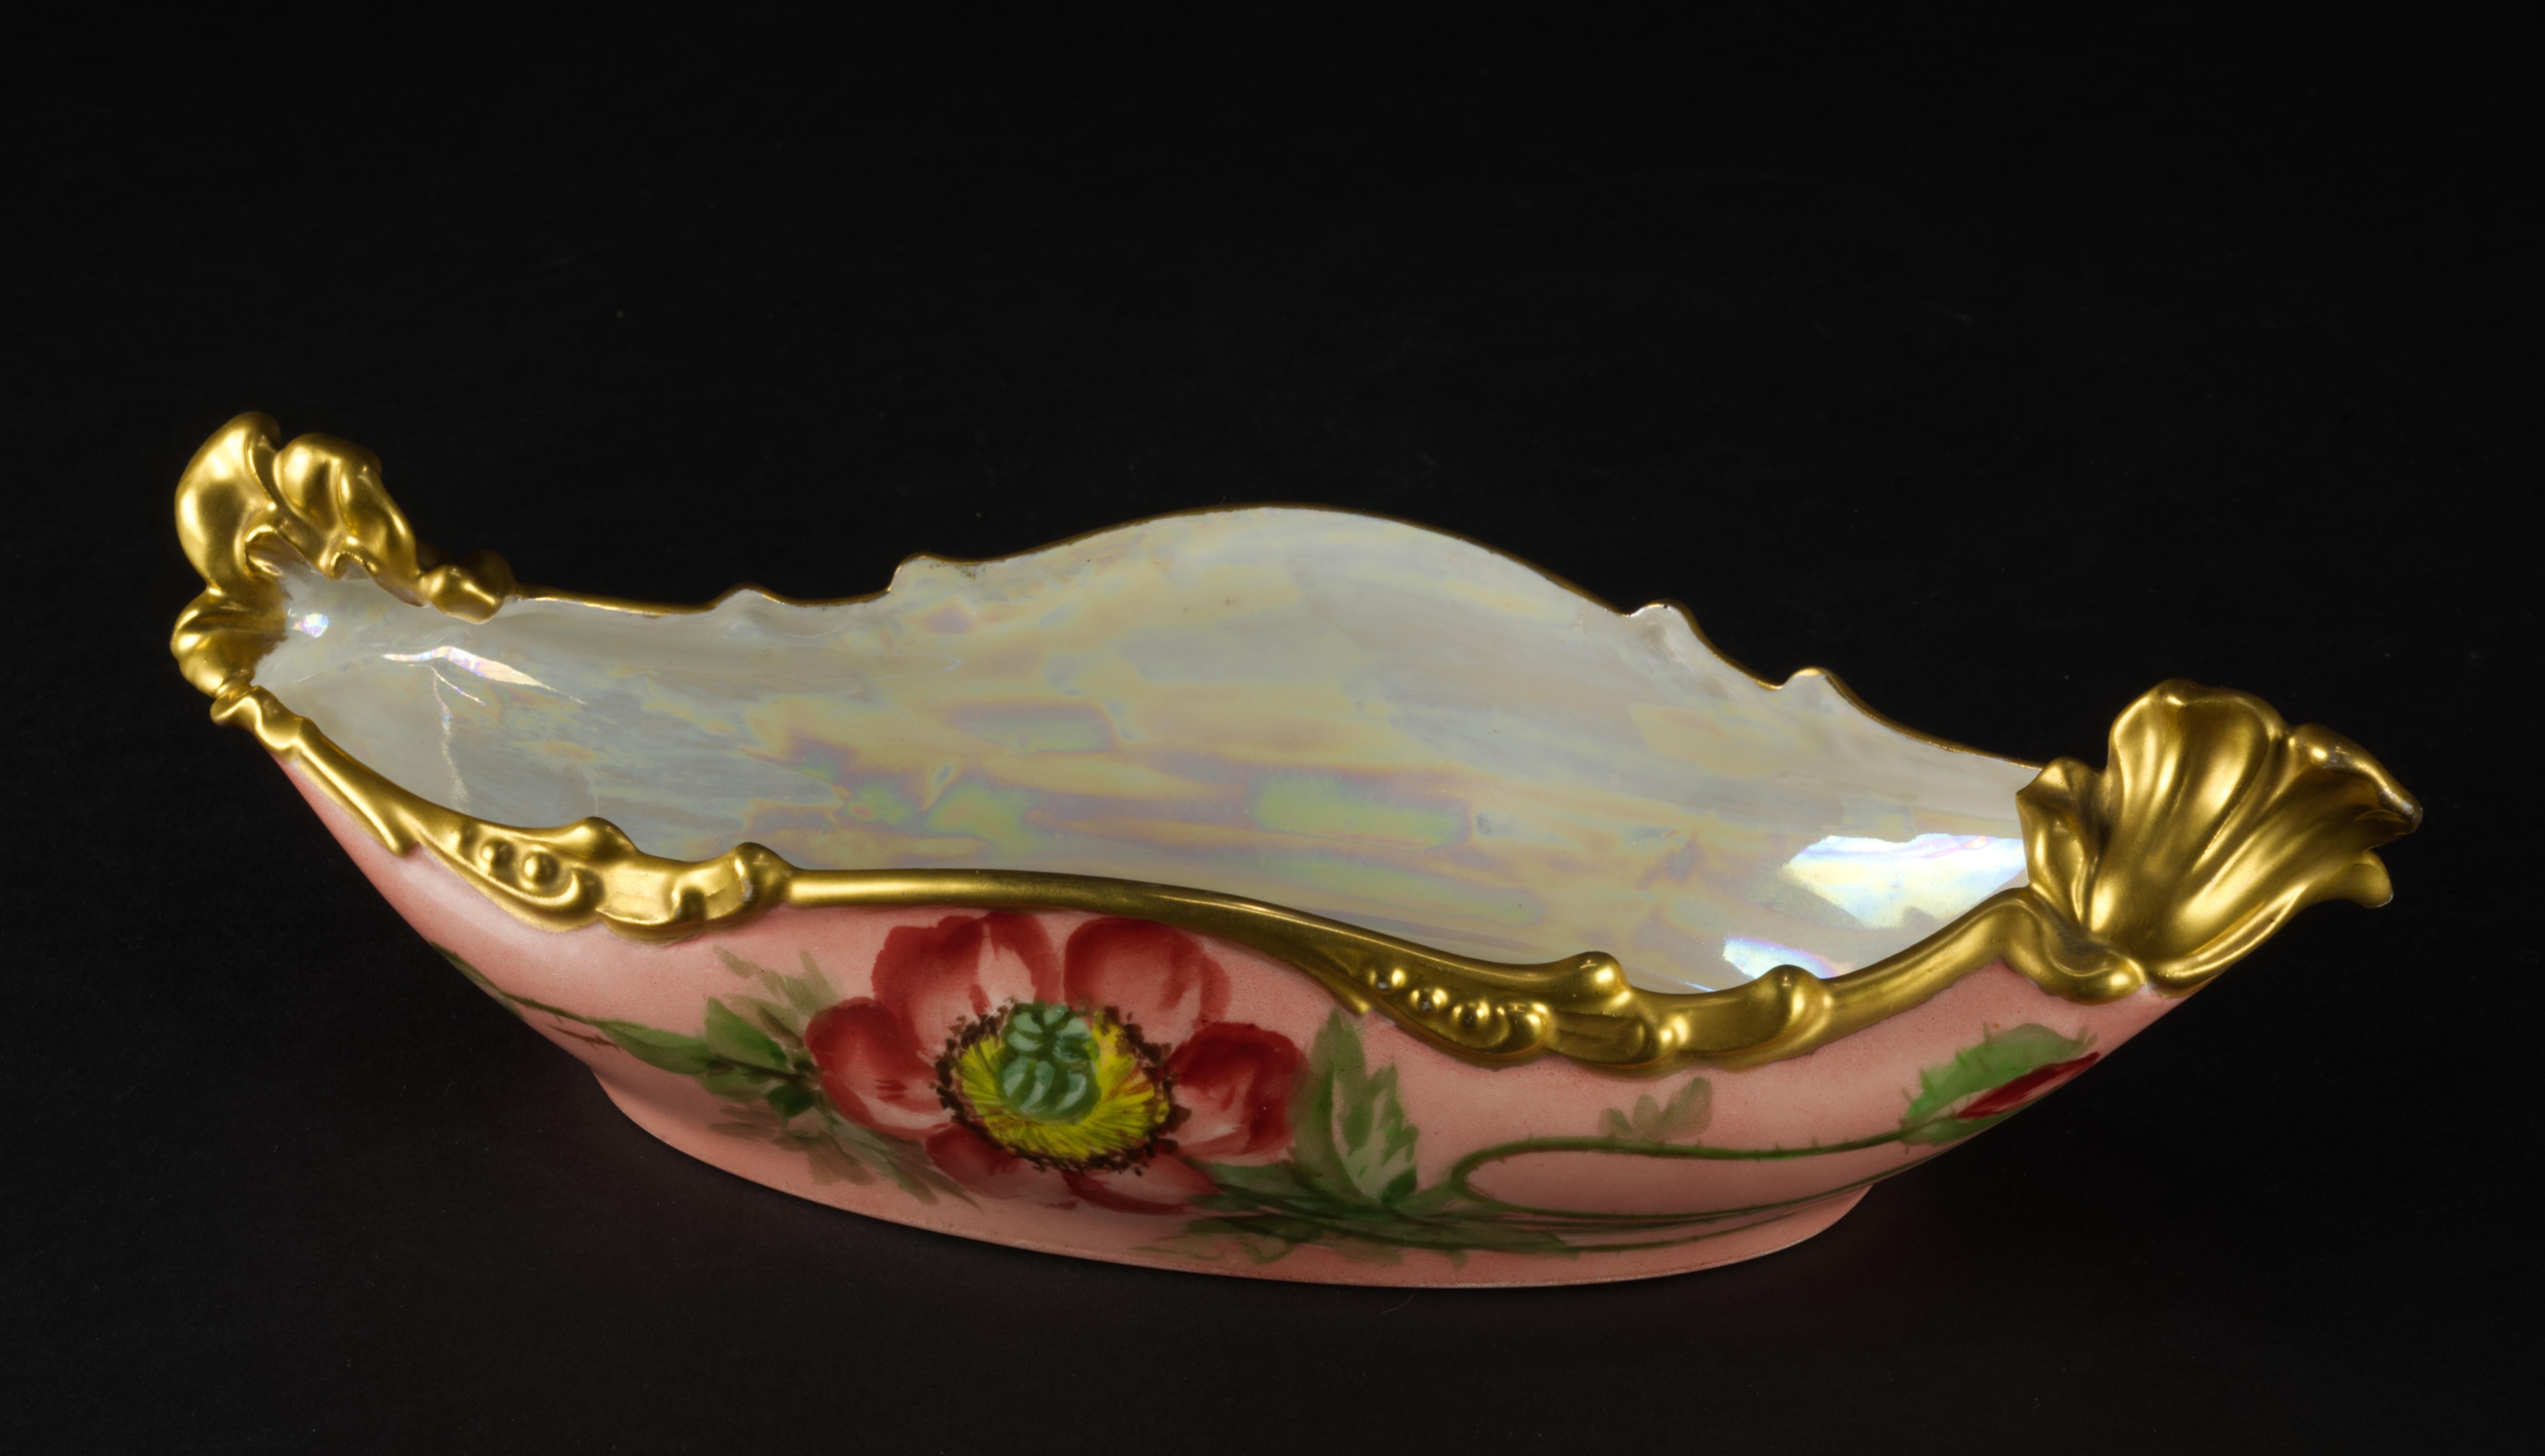 
Rare assiette ravier ou bol de service en porcelaine de Jean Pouyat, peinte à la main de fleurs de pavot rouges sur fond rose et décorée d'une garniture dorée élaborée de style Art nouveau ; le bord ondulé, de forme organique, s'étend autour du bol